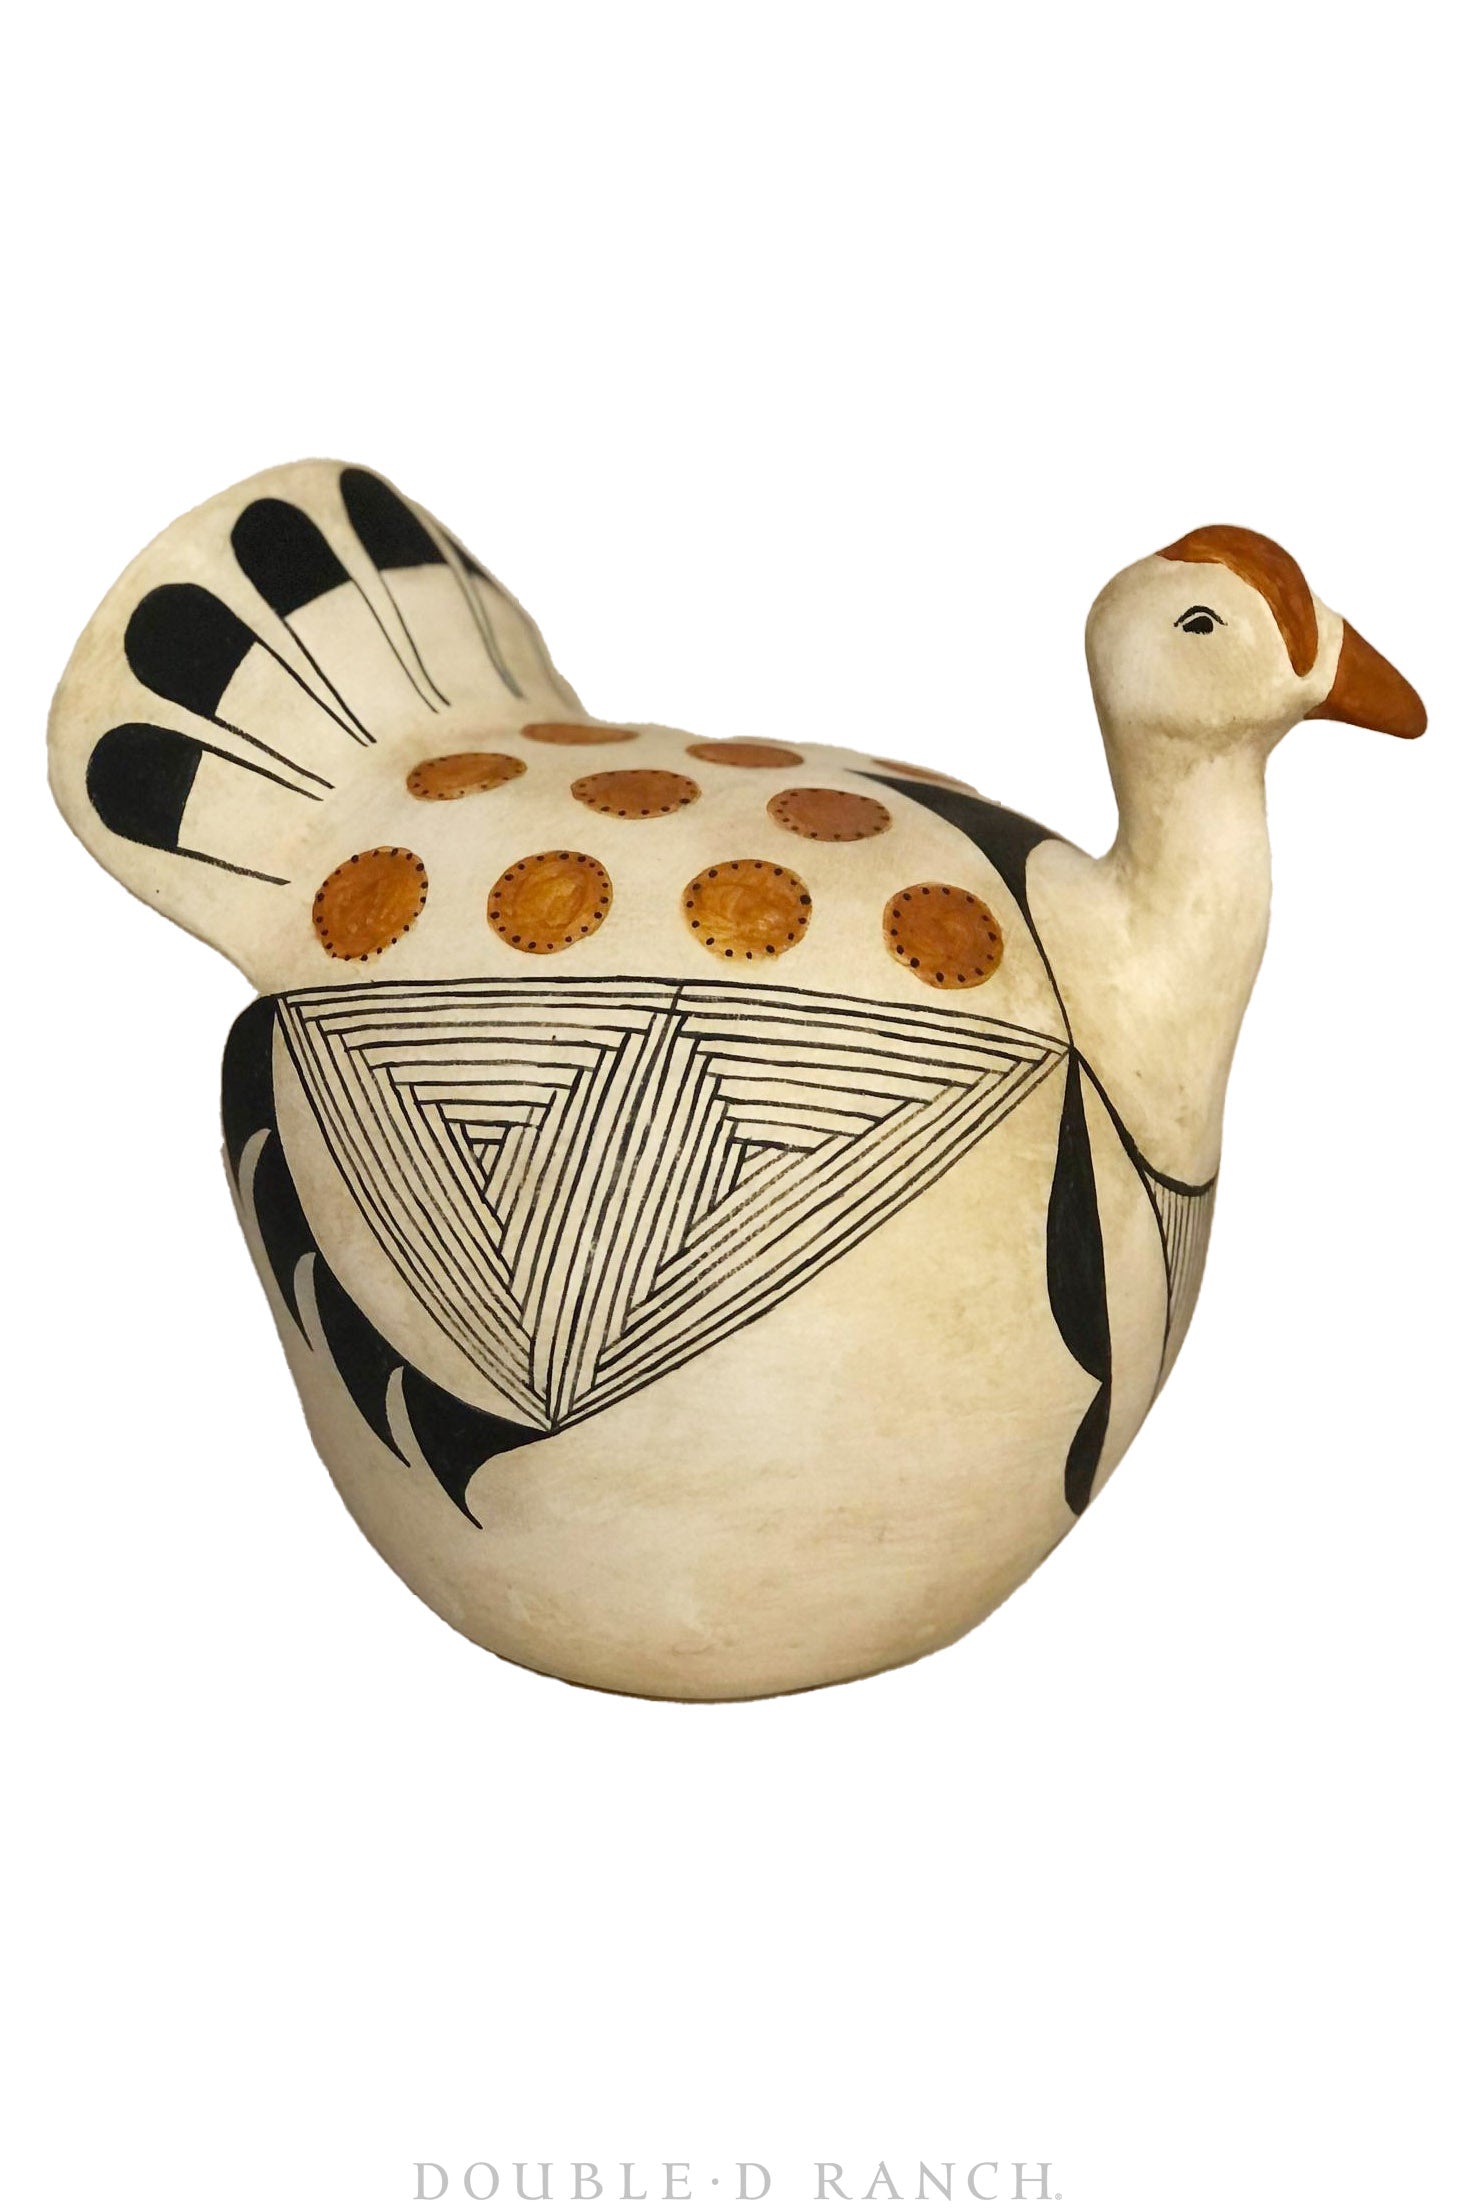 Miscellaneous, Art, Pottery, Acoma Tom Turkey, Reproduction in Clay, Tonya Lamb, Contemporary, 630